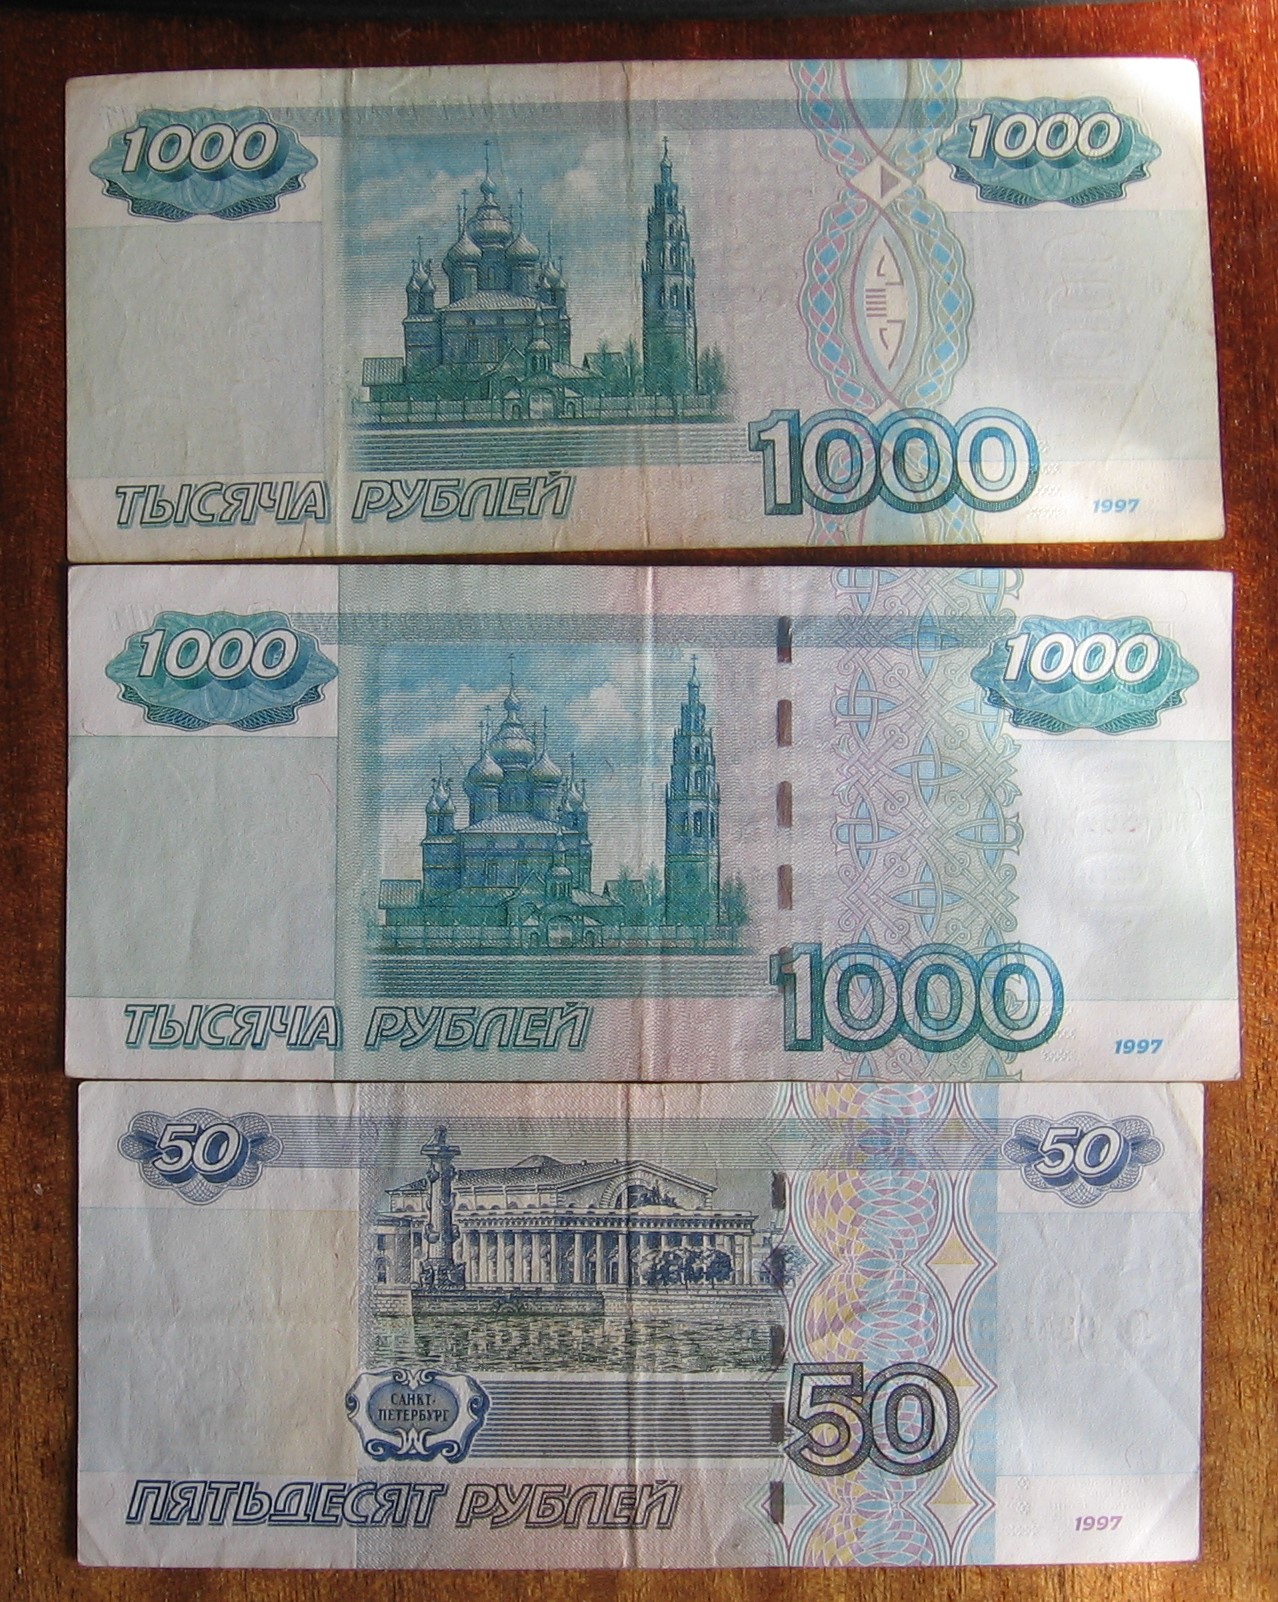 Го 1000 рублей. Купюра 1000 р 1997 года. Купюра 1000 рублей 1997 года. Старая 1000 купюра 1997 года.